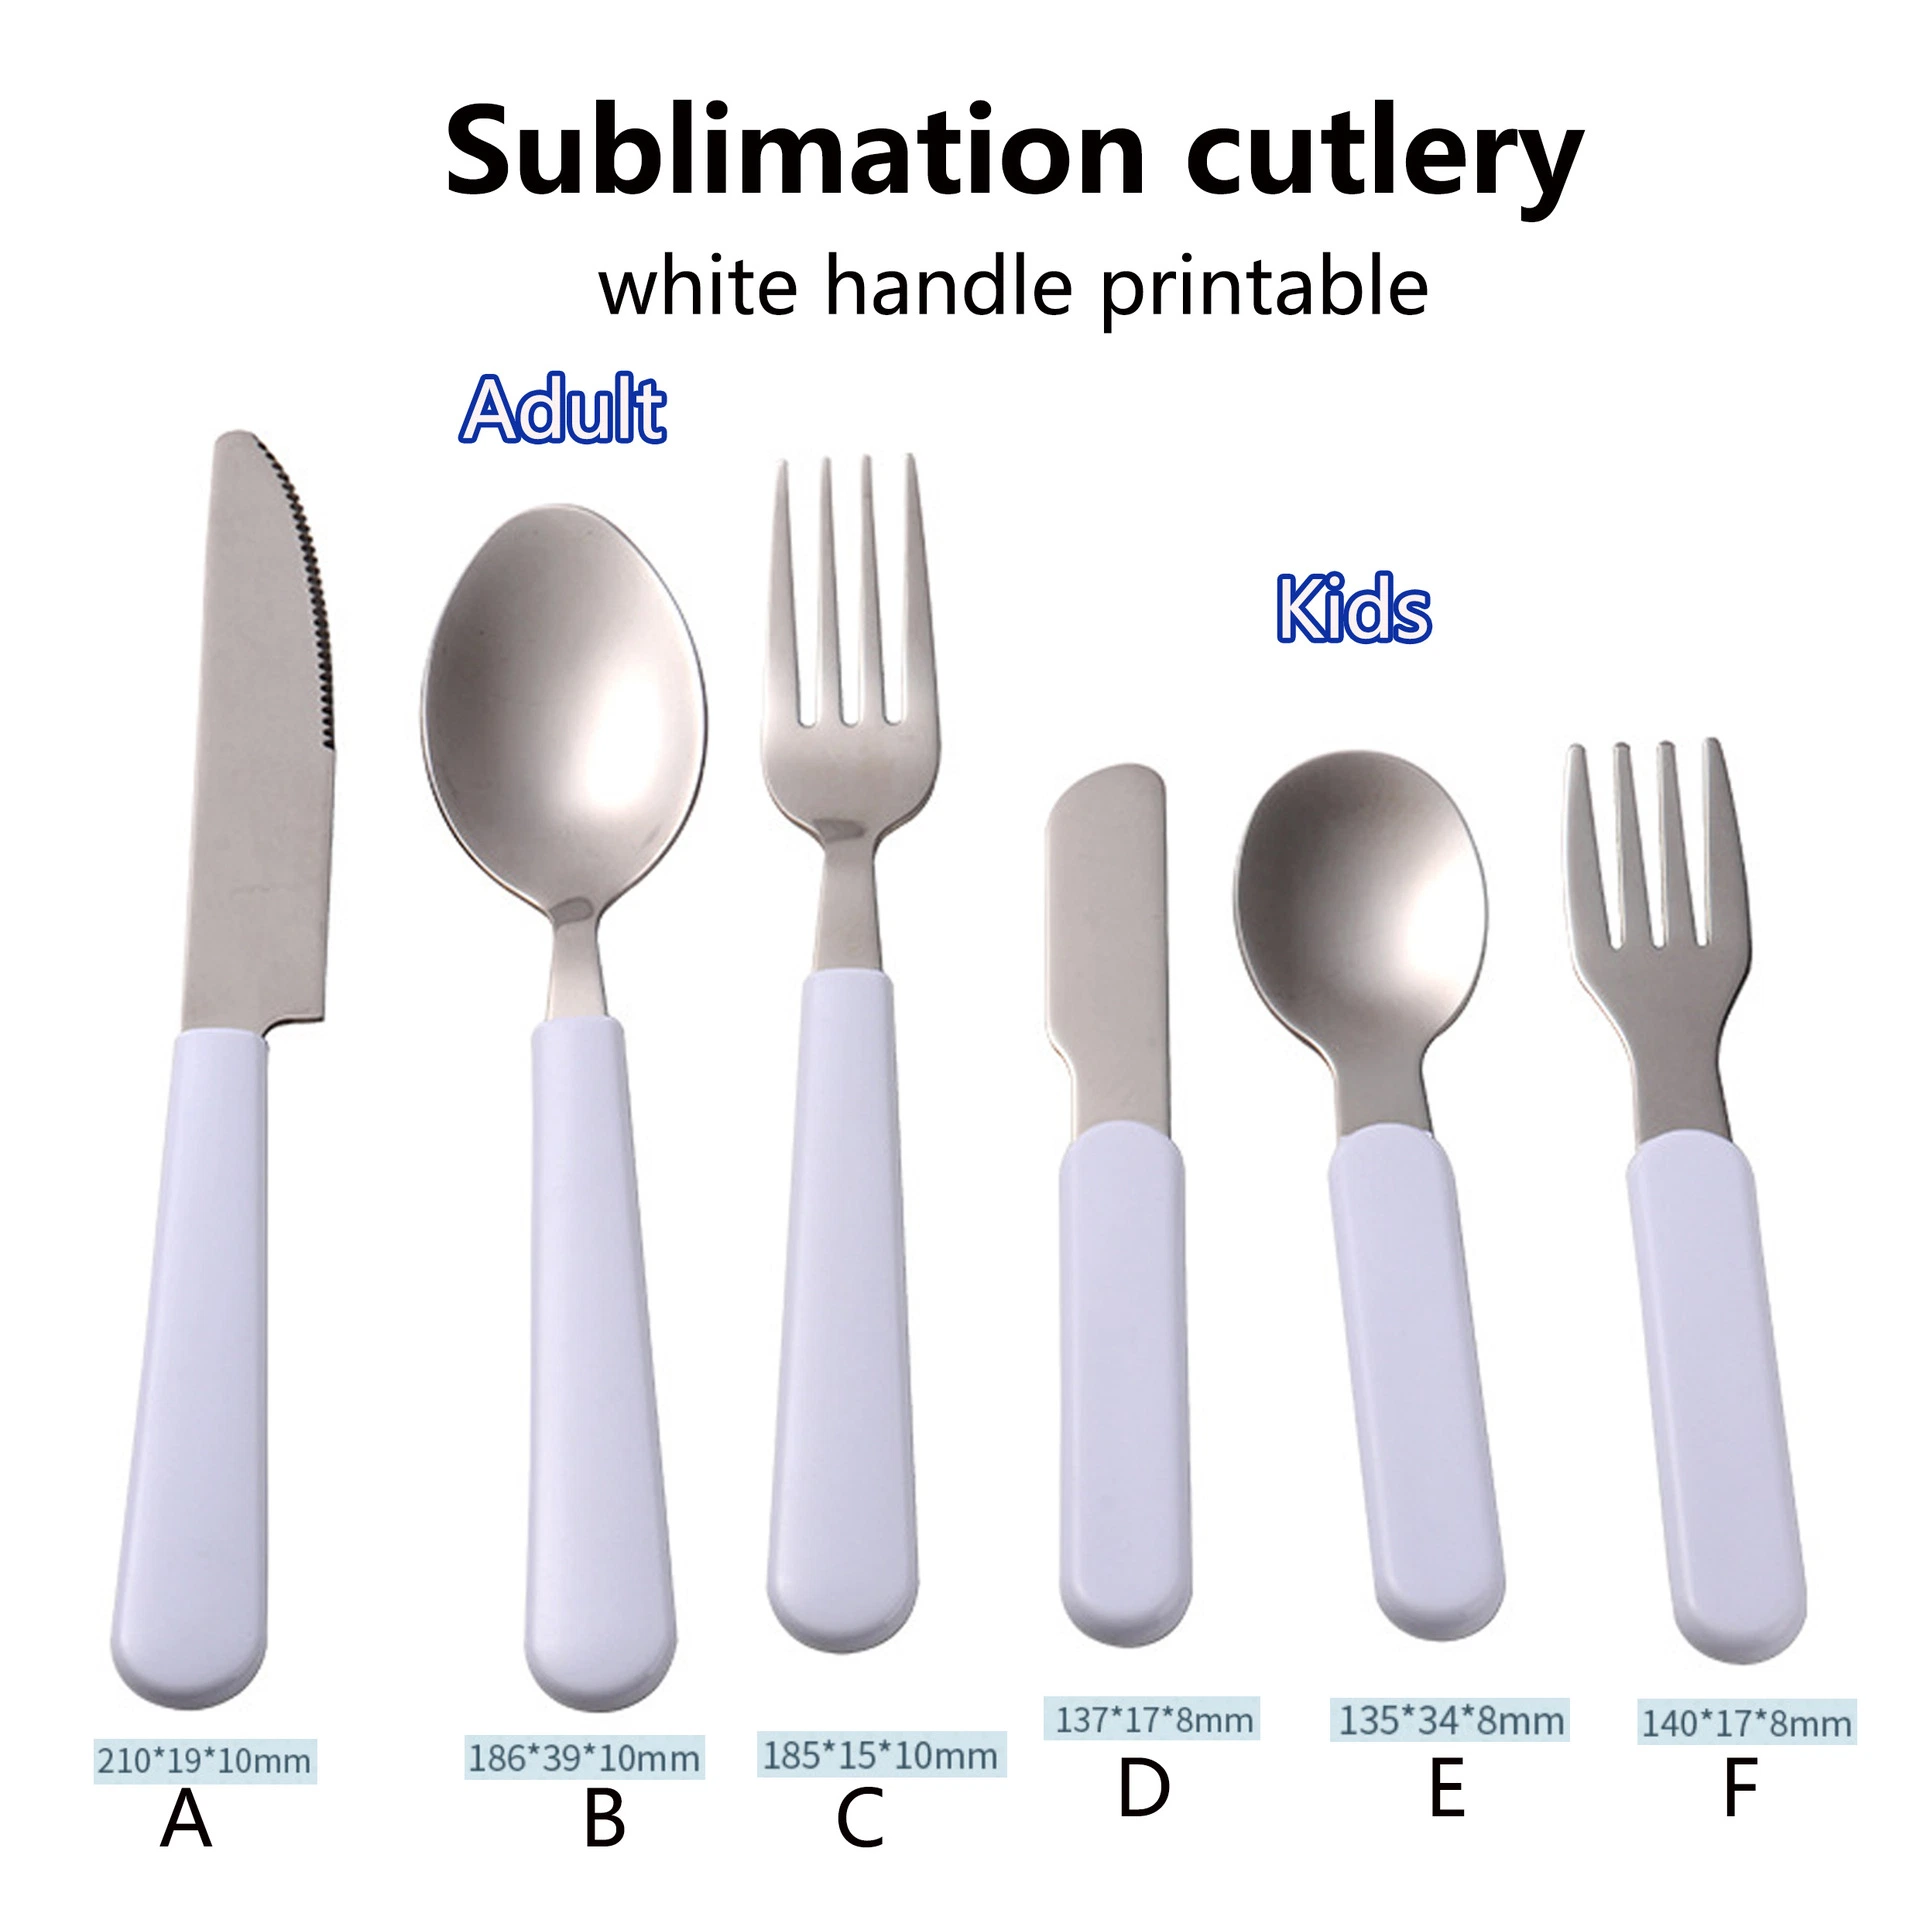 Blanc DIY vierge de la sublimation de la vaisselle en acier inoxydable Knife &amp; Fourchette &amp; cuillère Vaisselle pour les enfants adultes de l'Ouest